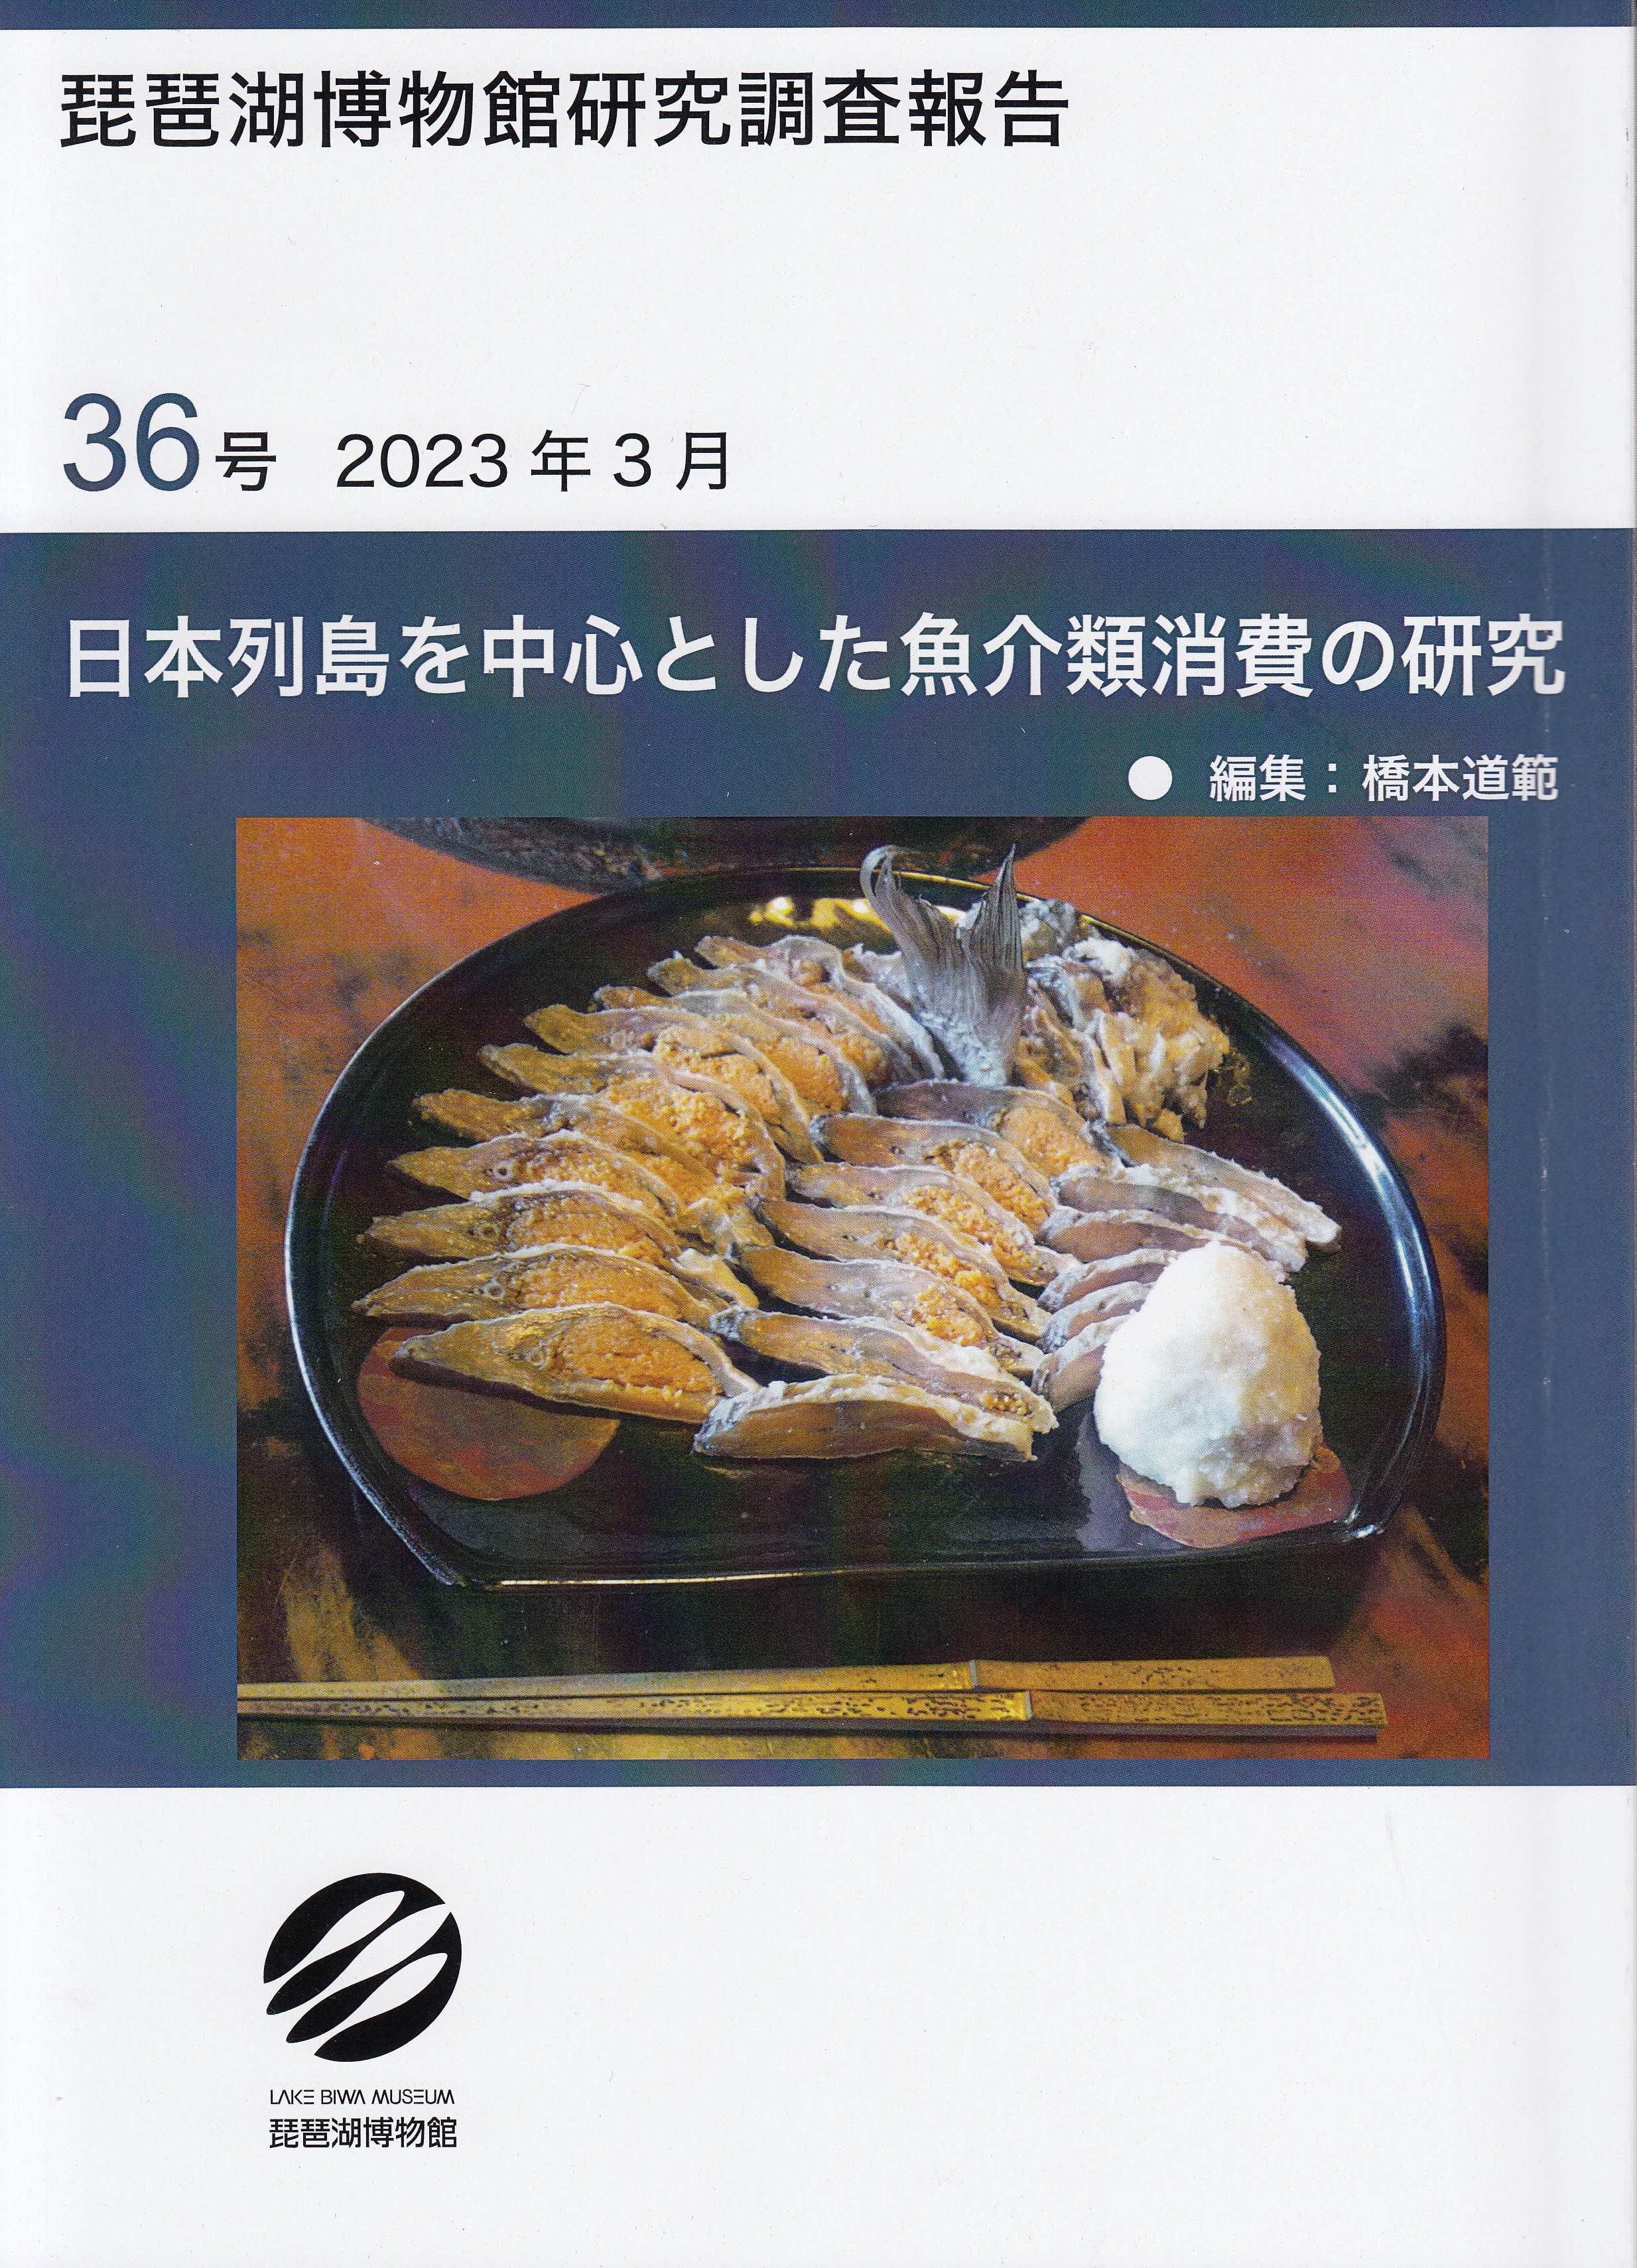 日本列島を中心とした魚介類消費の研究